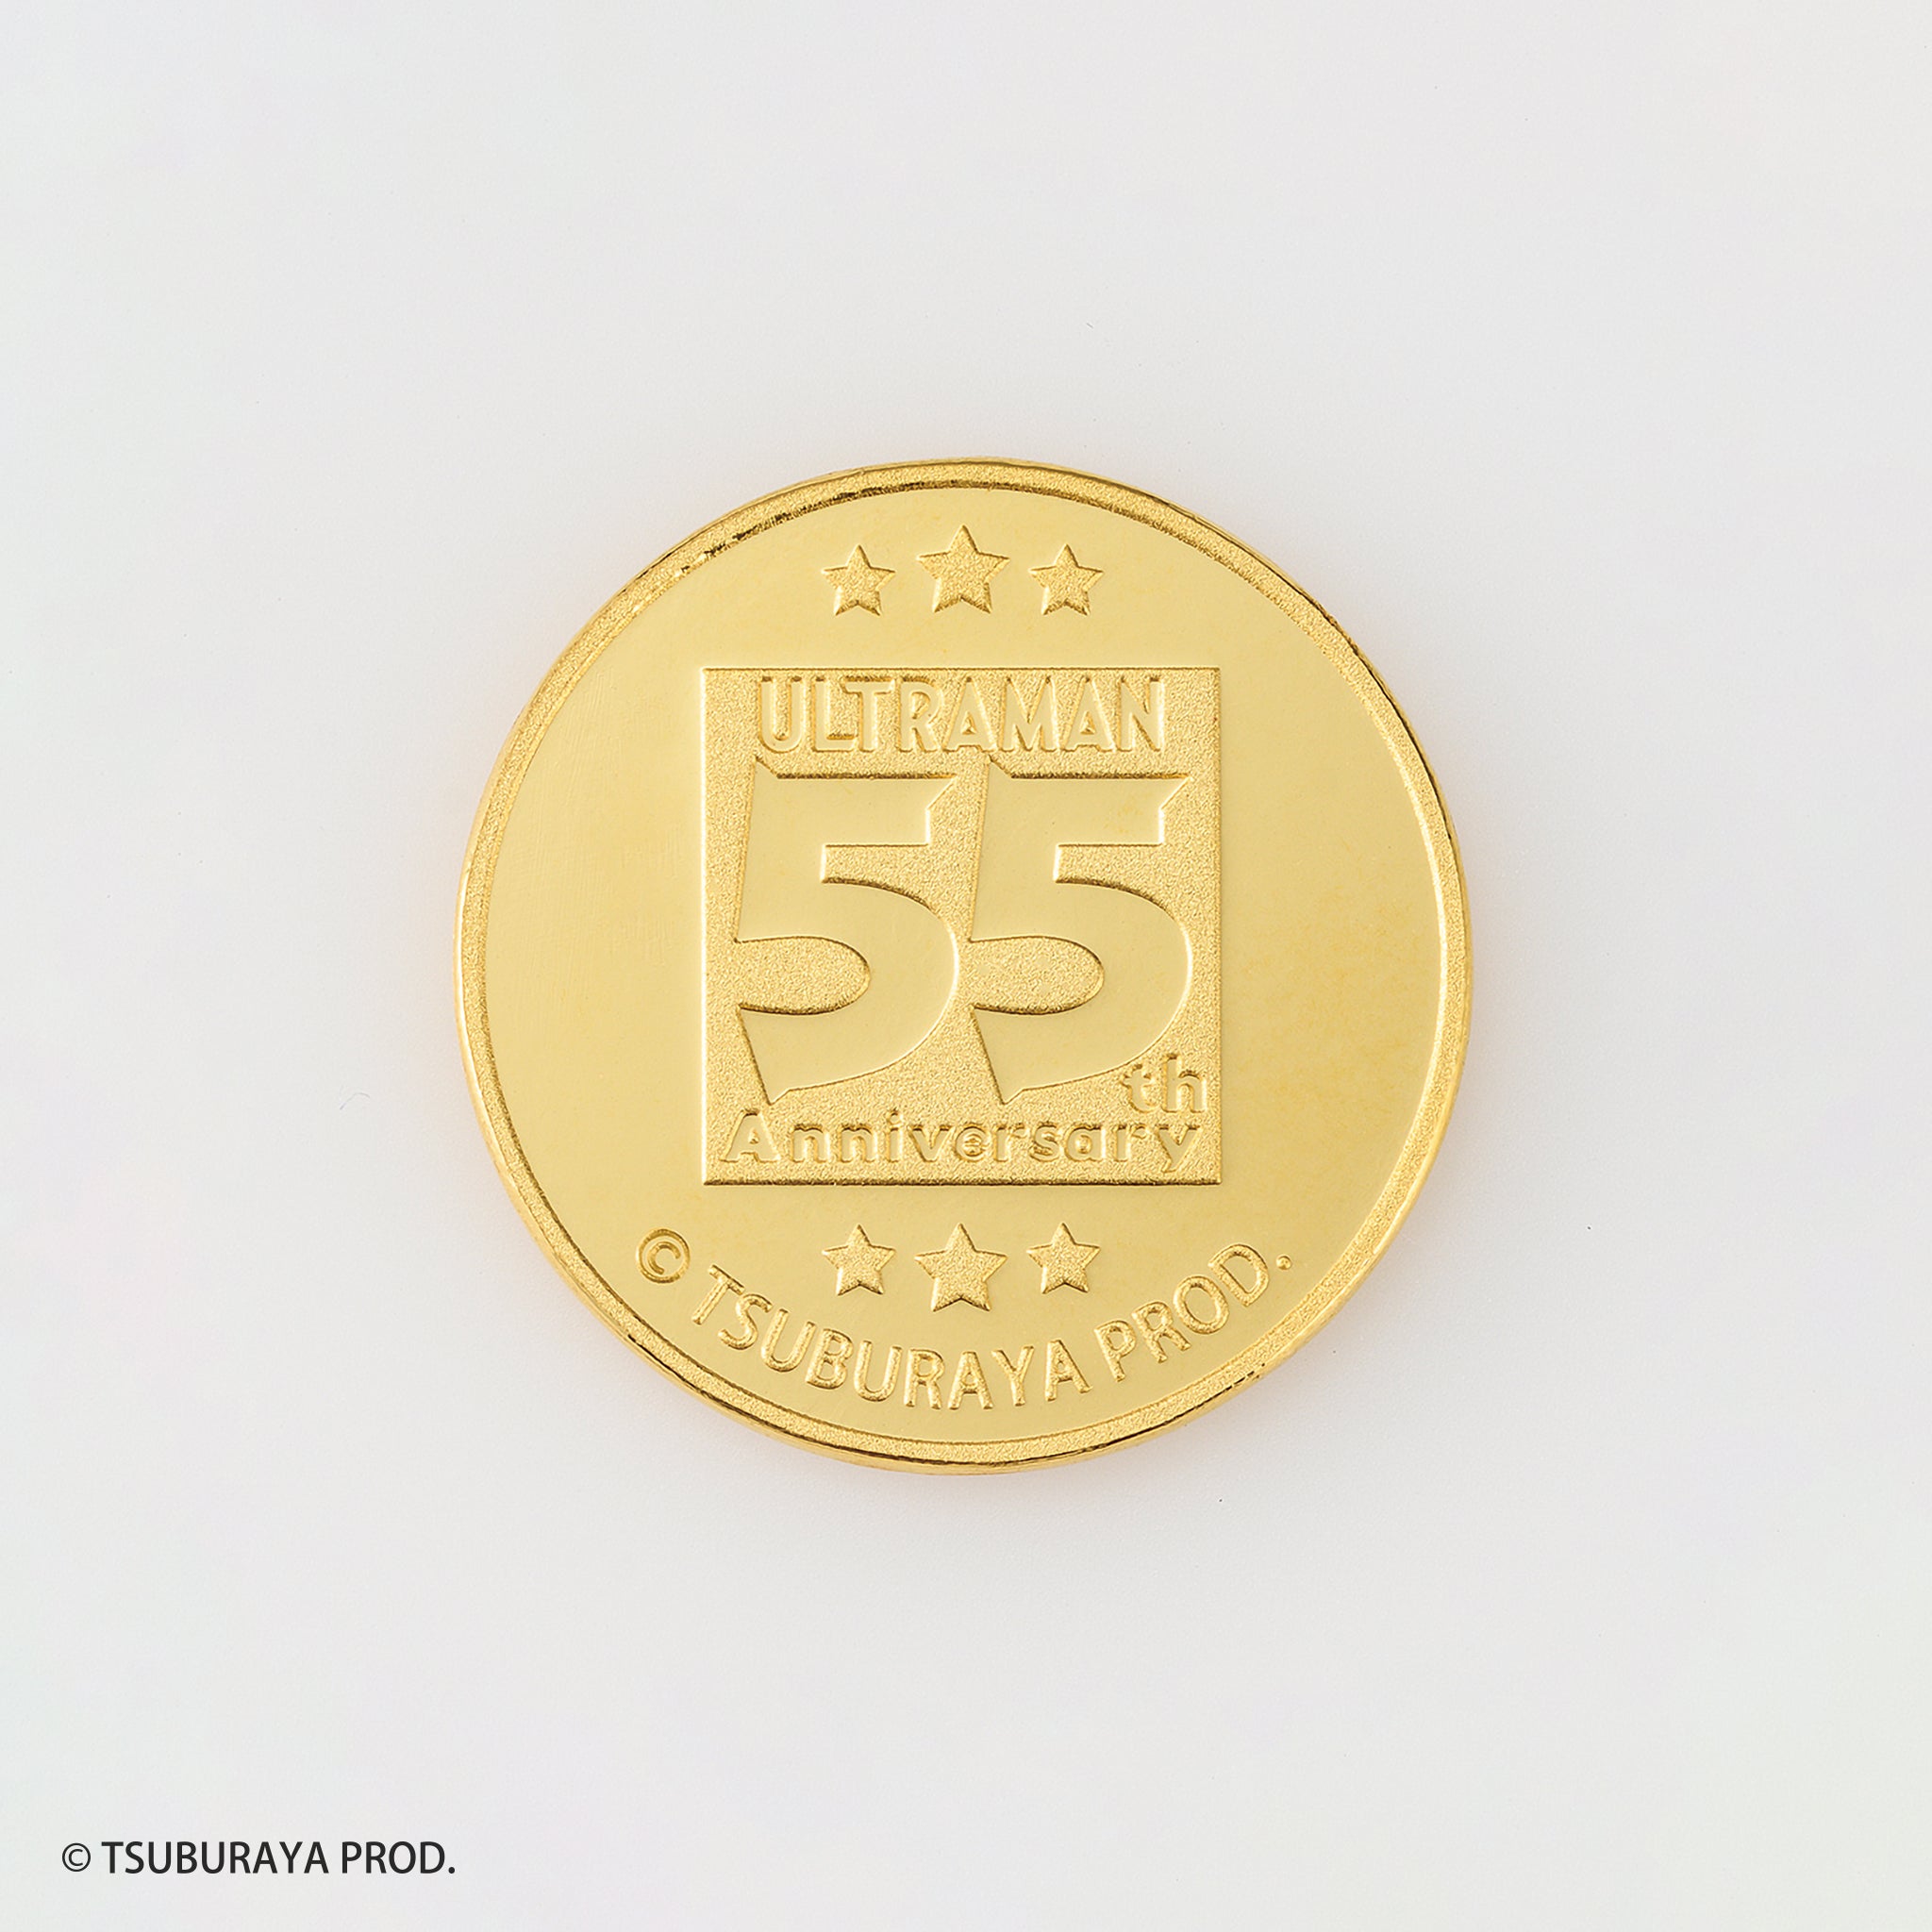 K24金製品(純金/ウルトラマン 55th Anniversary/メダル/7.5g)《23C60102》